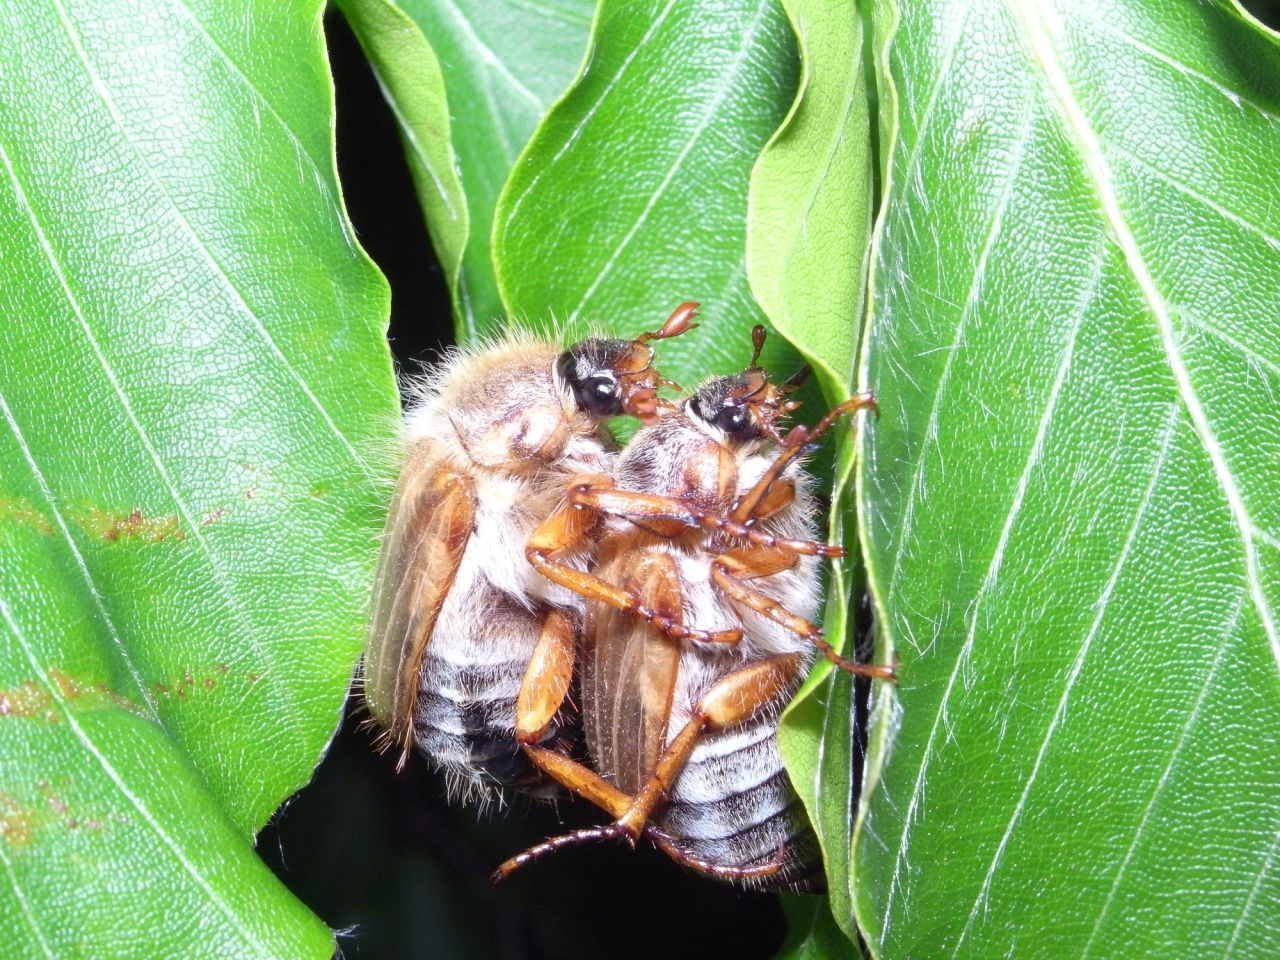 Flirt-Flug im Juni: Die Käfer fliegen zur Paarung aus. Das Männchen stirbt danach, das Weibchen legt die Eier in den Boden. 